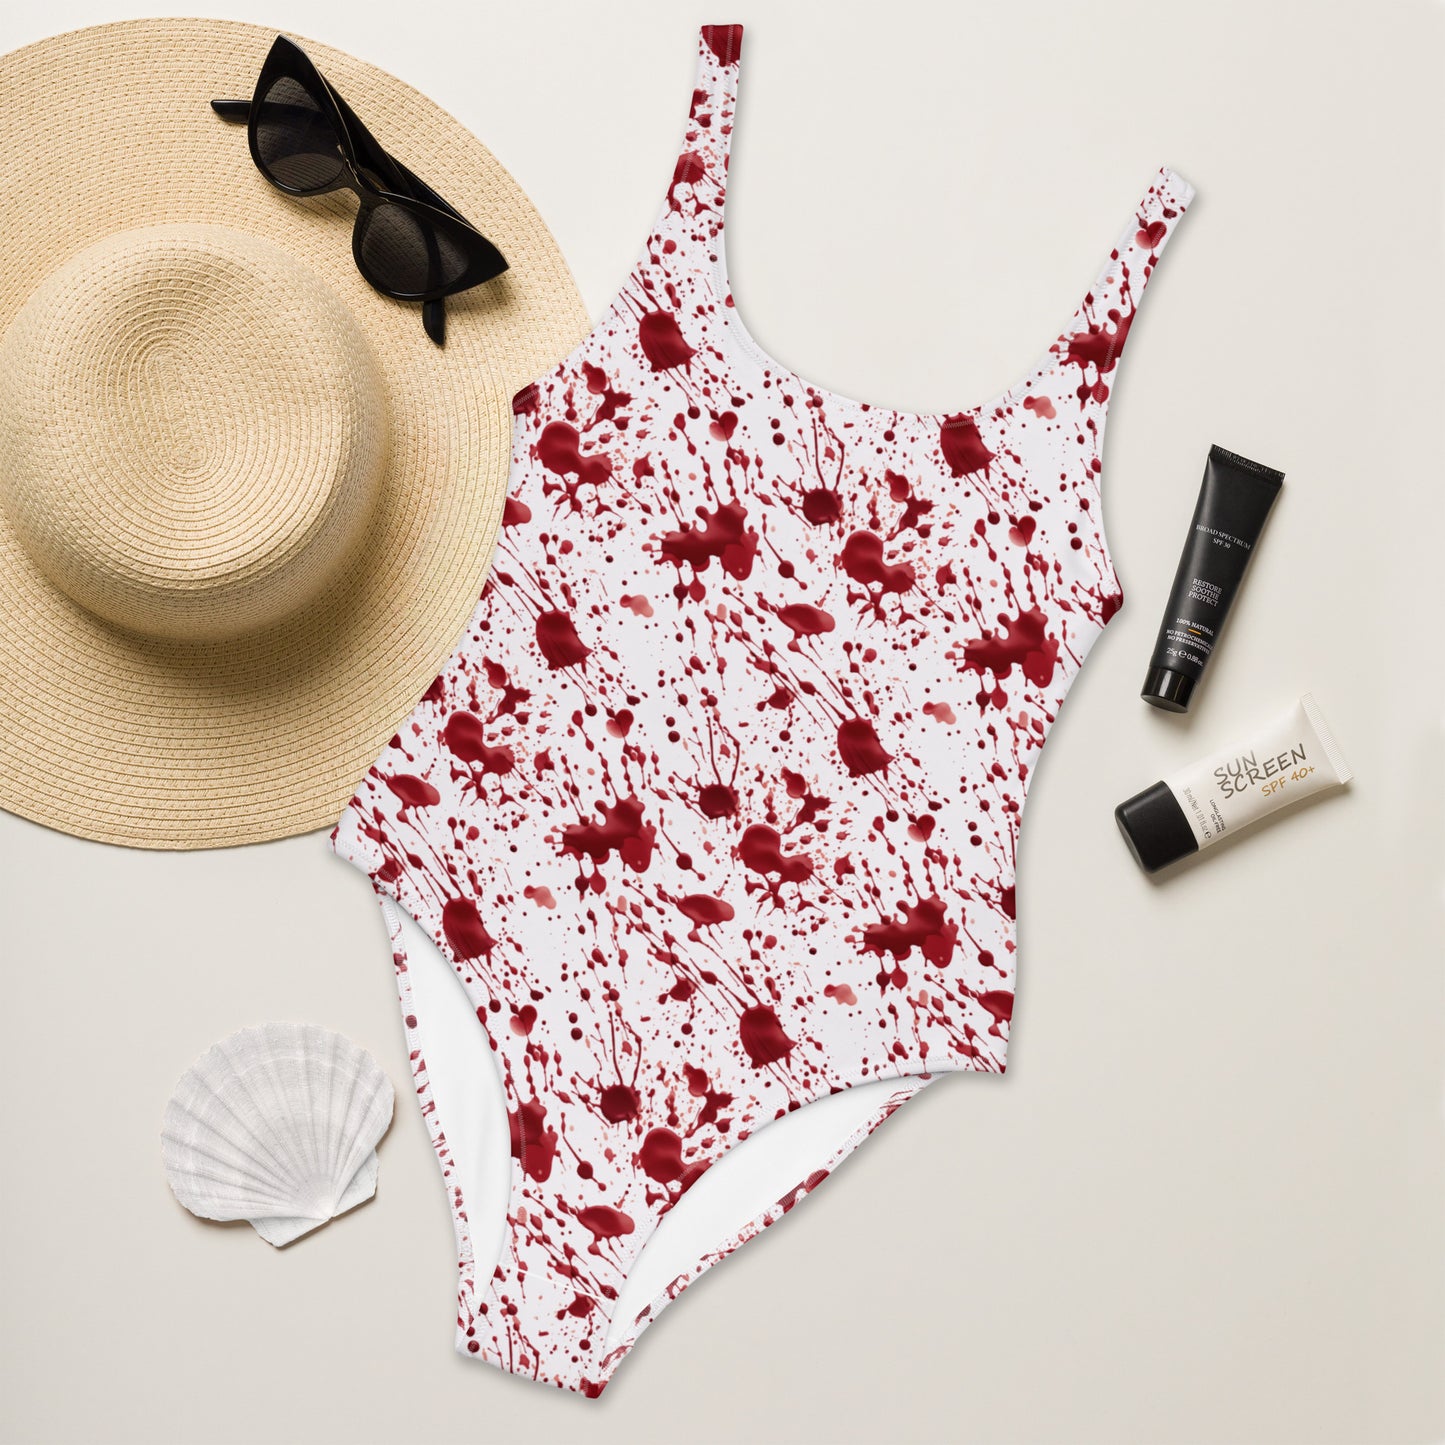 Blood Splatter One-Piece Swimsuit